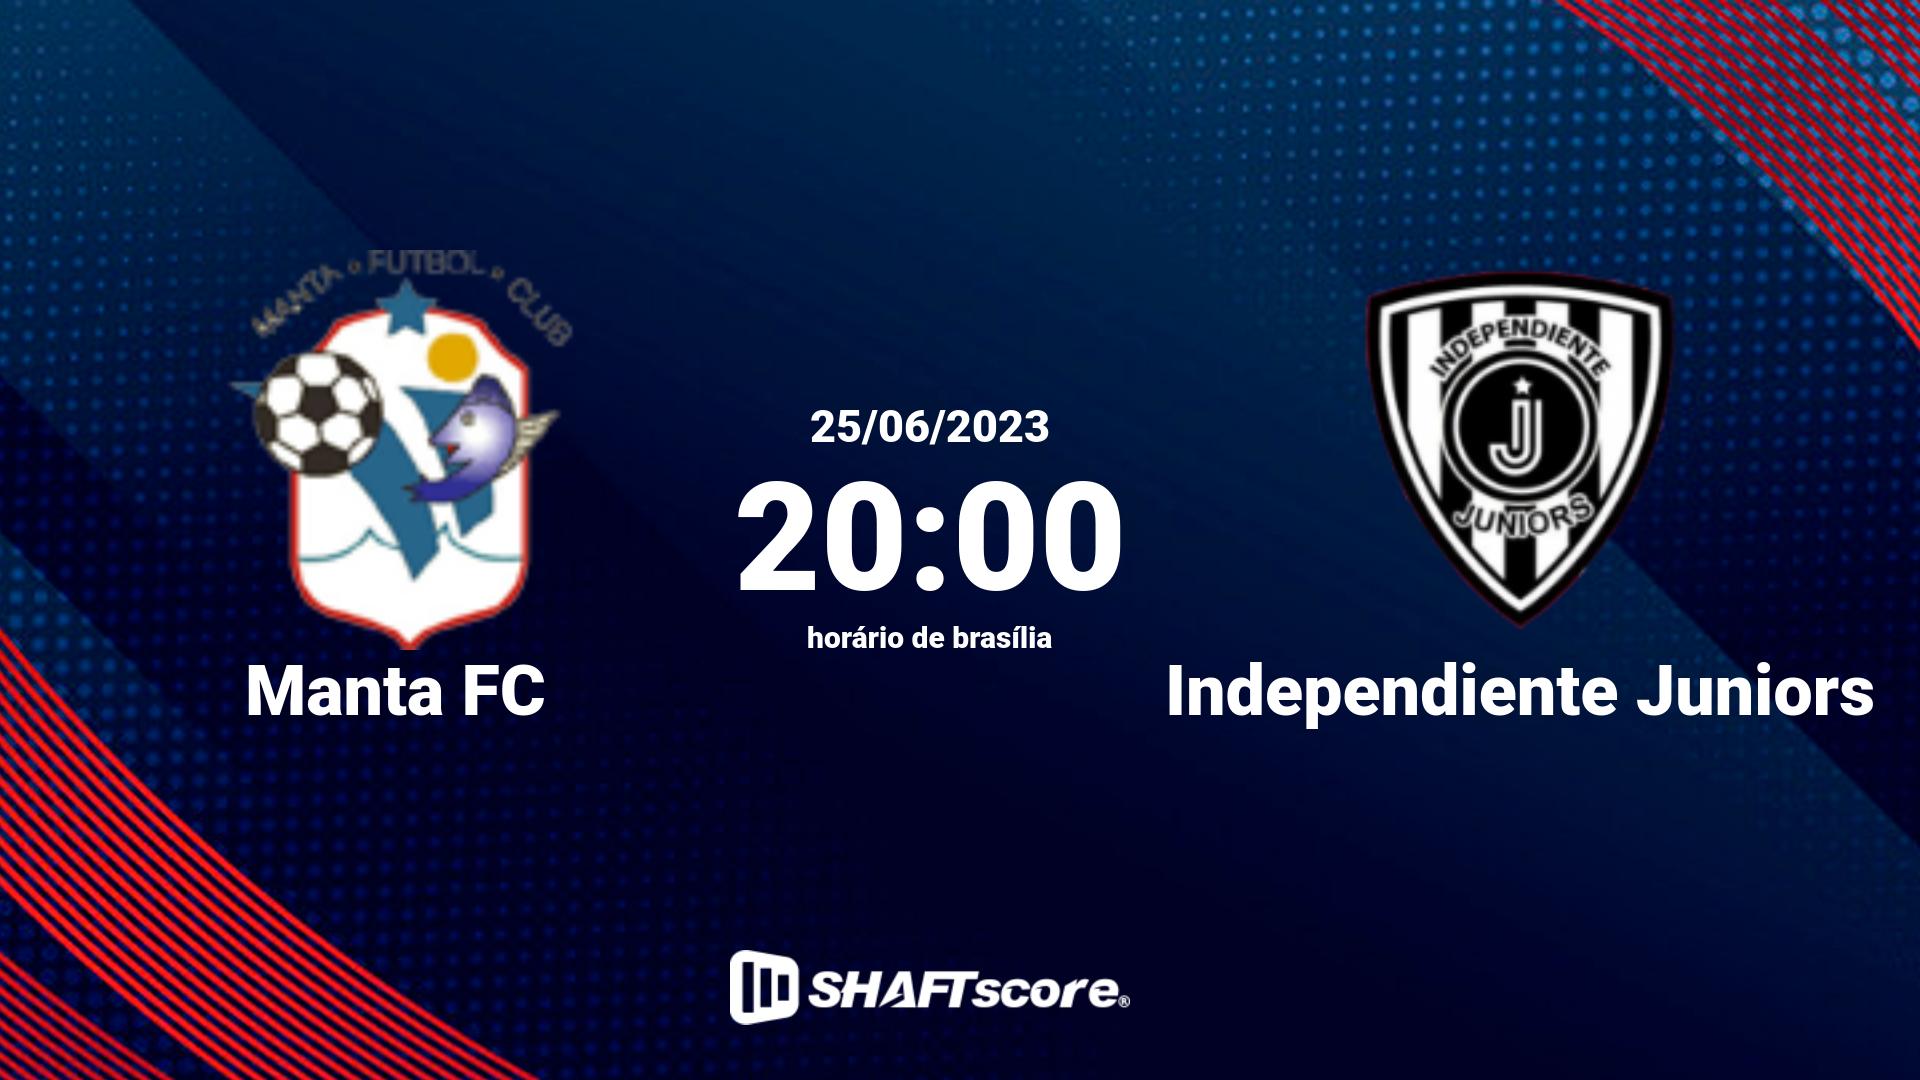 Estatísticas do jogo Manta FC vs Independiente Juniors 25.06 20:00